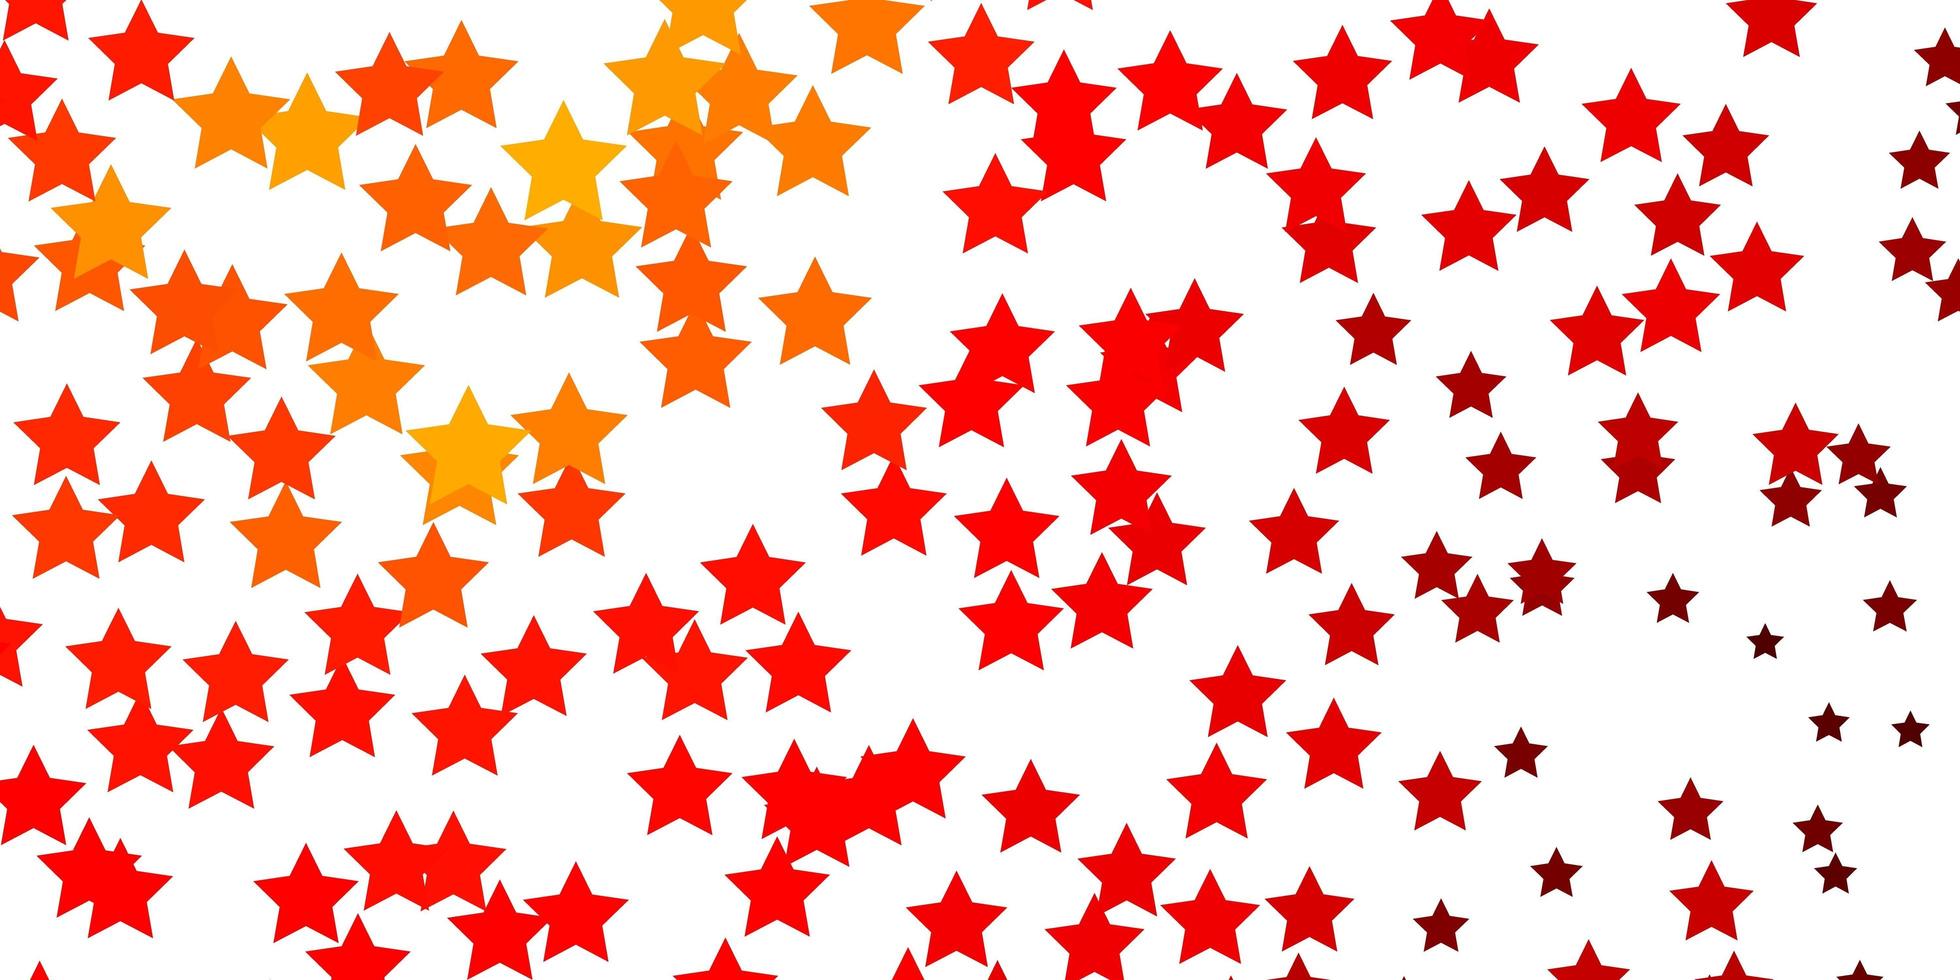 modèle vectoriel orange clair avec des étoiles au néon brouiller le design décoratif dans un style simple avec un design d'étoiles pour la promotion de votre entreprise